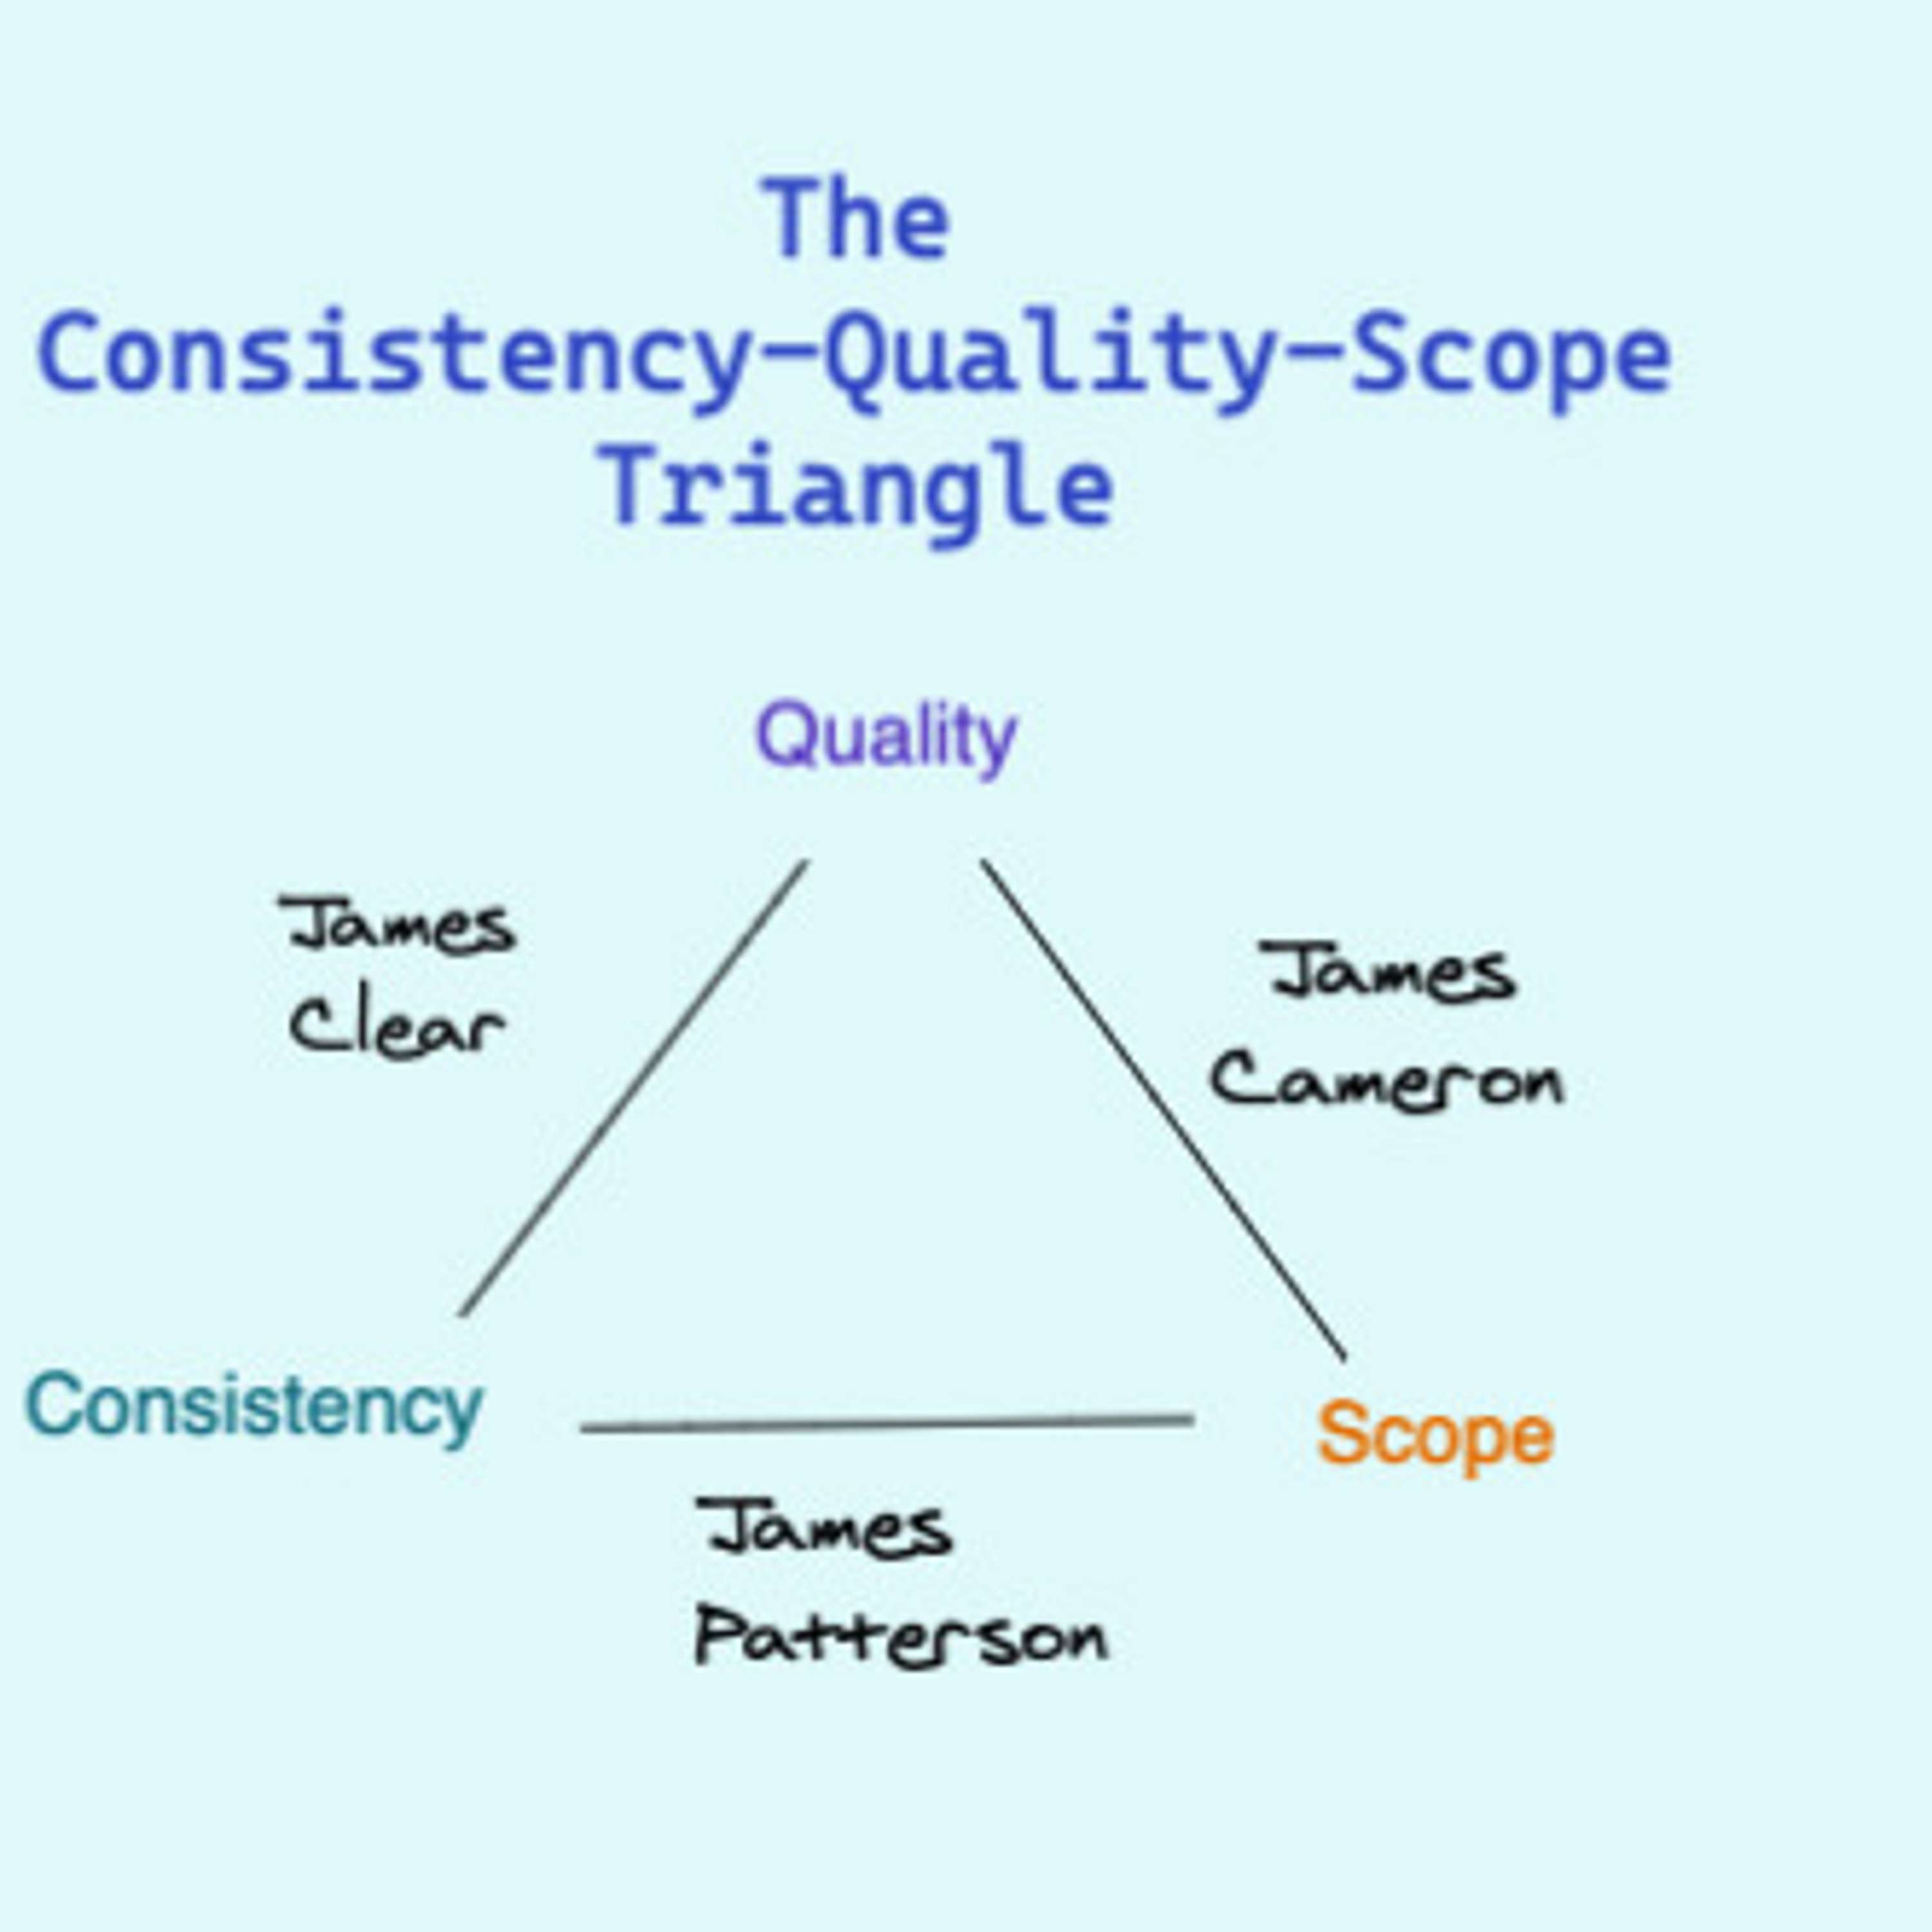 Quality vs Consistency